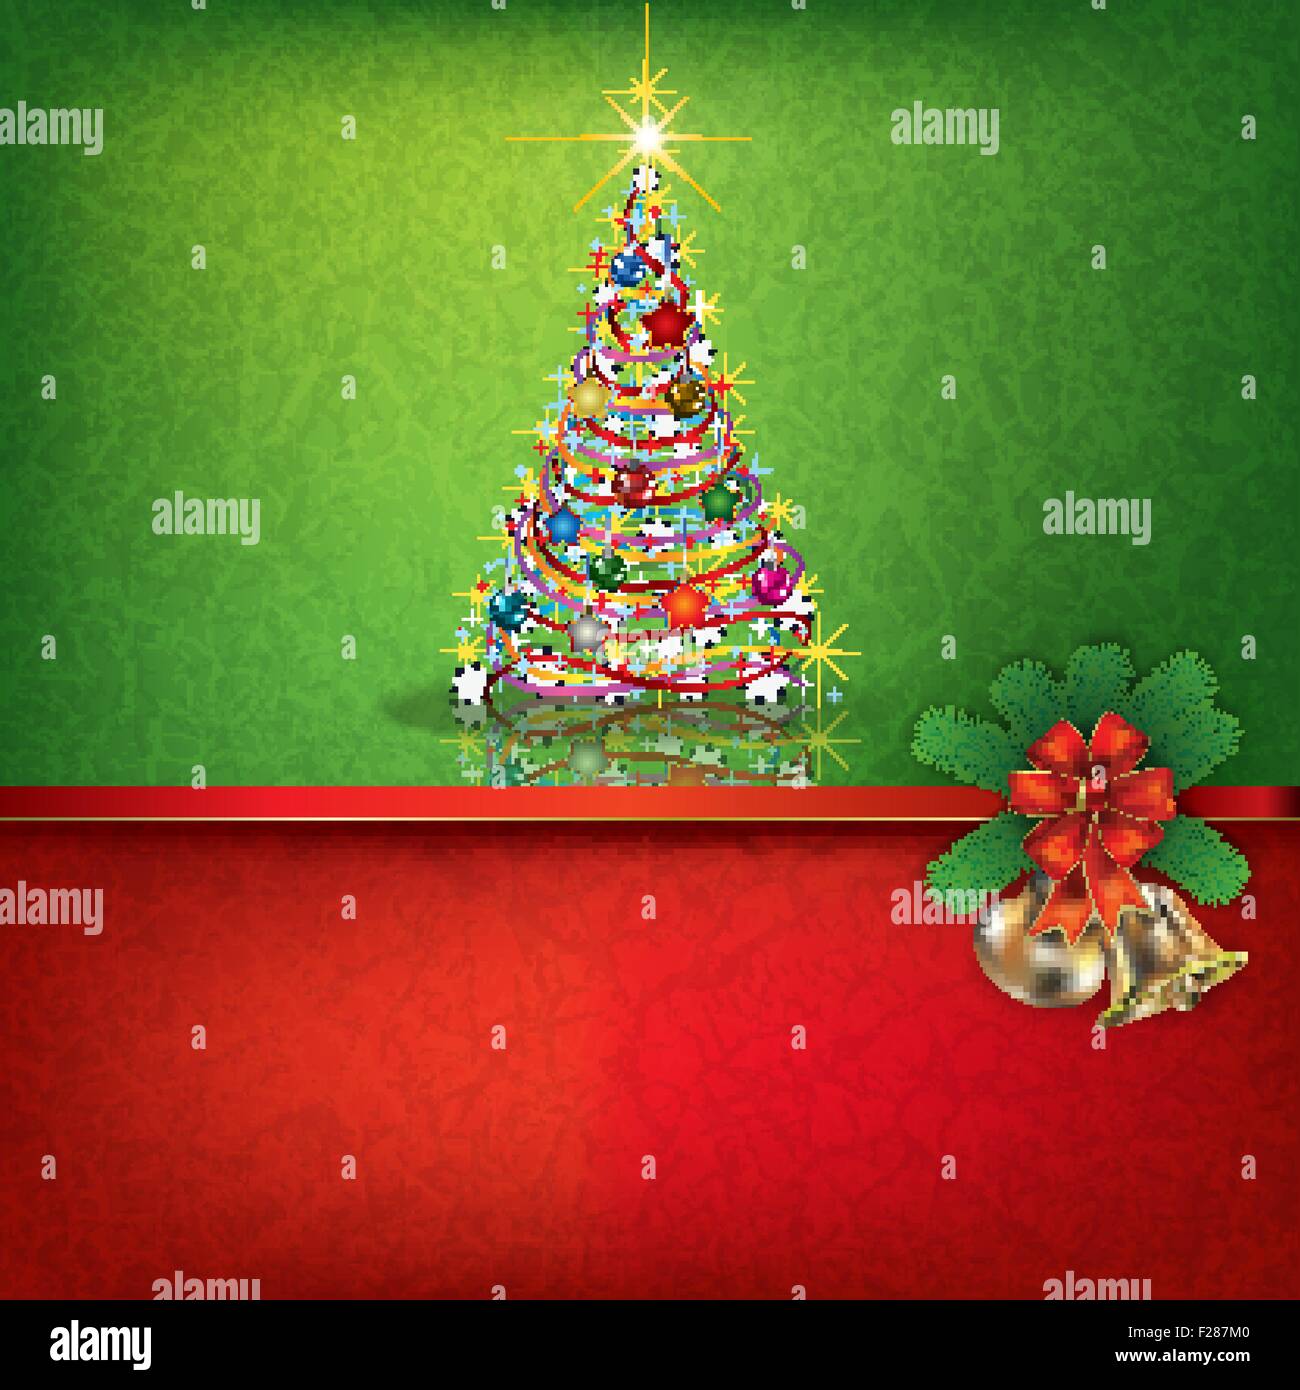 Abstract grunge fond vert rouge avec clochettes et l'arbre de Noël Illustration de Vecteur